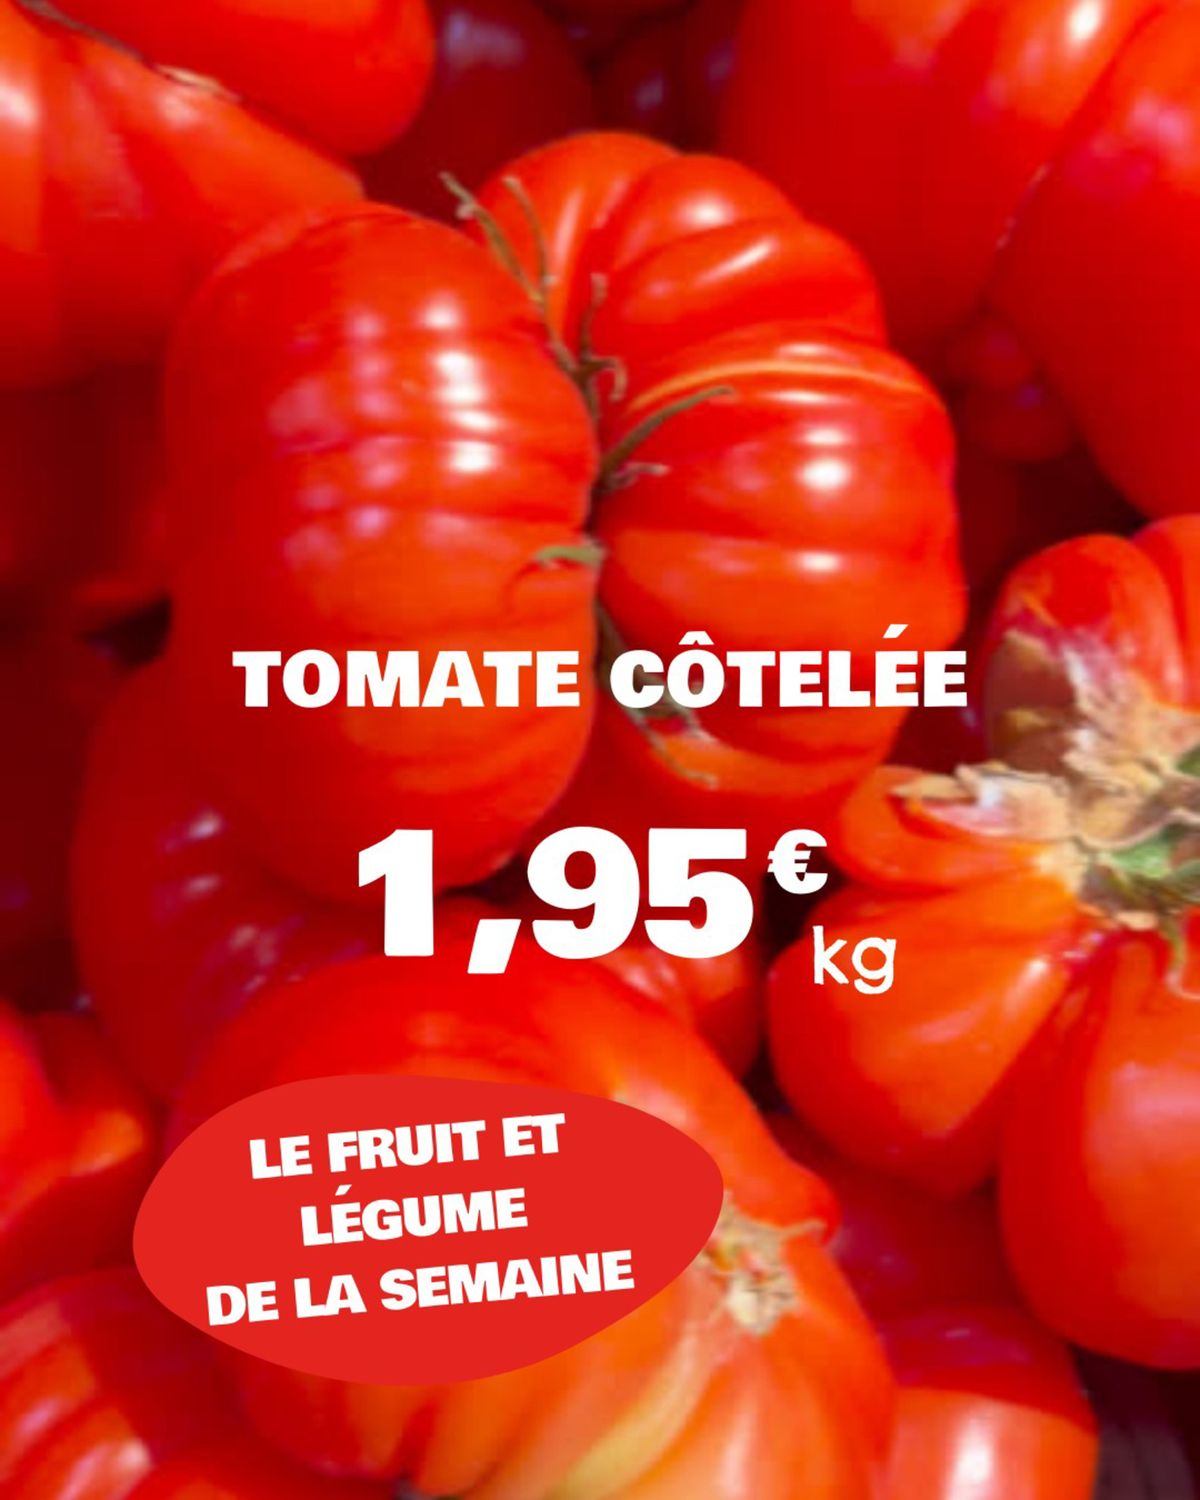 Catalogue Les offres fruits et légumes de la semaine sont en magasin !, page 00003